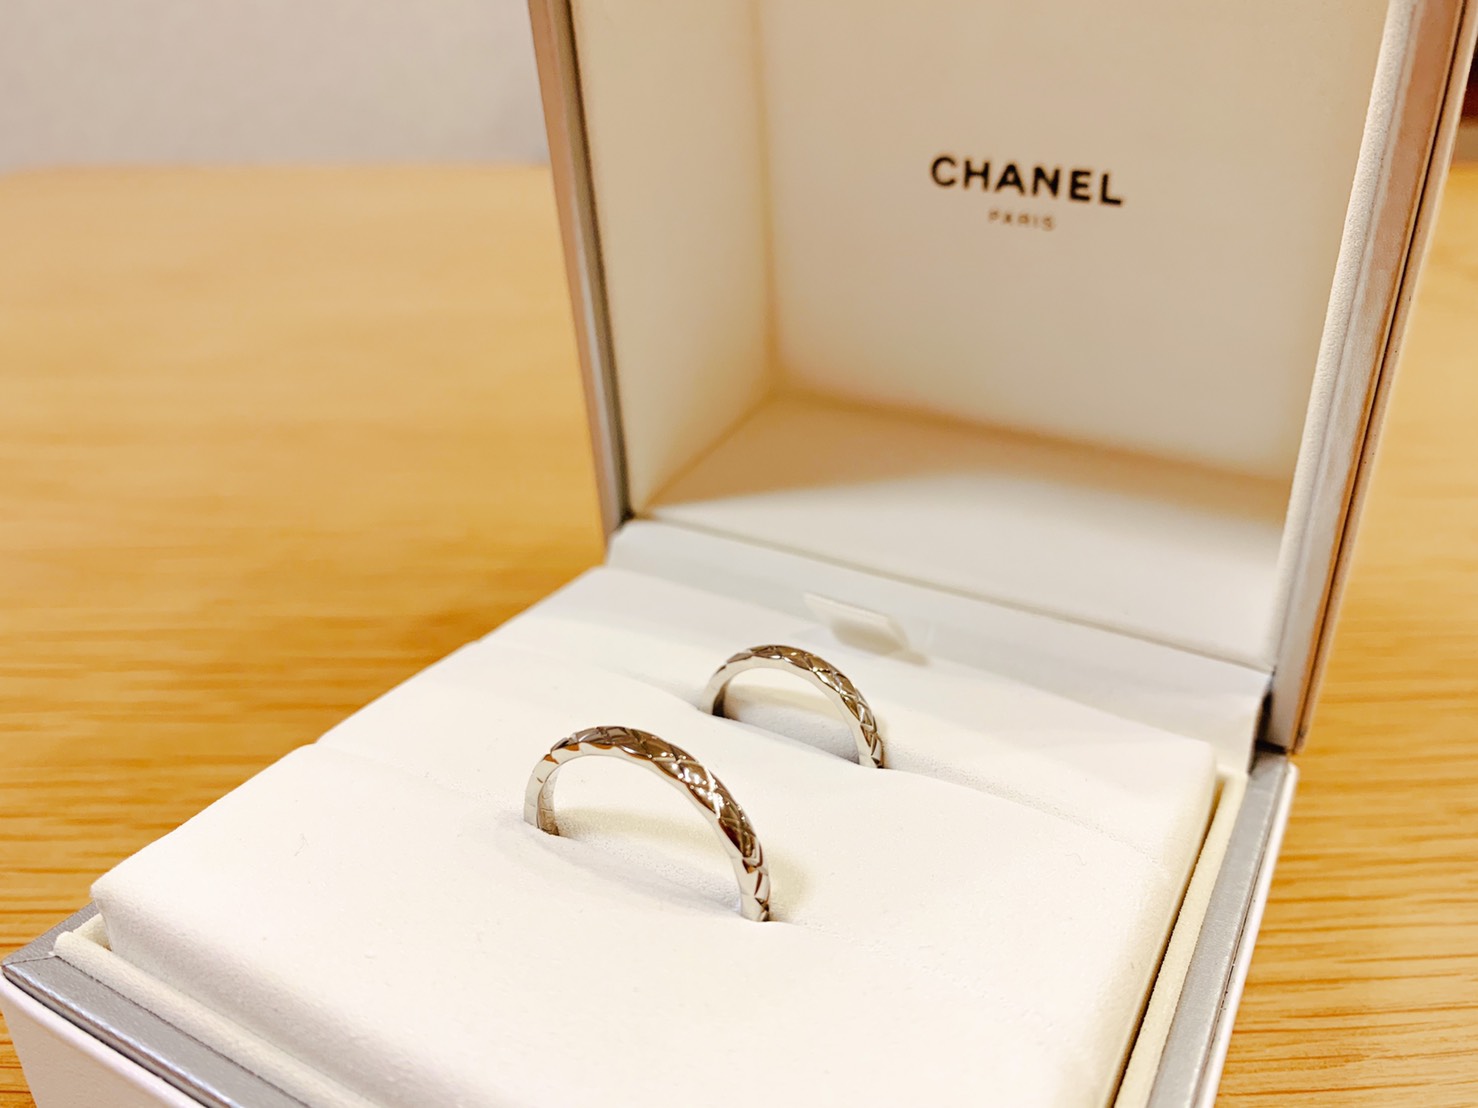 結婚指輪は大好きなブランド Chanel に 男性も使いやすいシンプルでお洒落なデザインに大注目 美花嫁図鑑 Farny ファーニー お洒落 で可愛い花嫁レポが満載 Byプラコレ